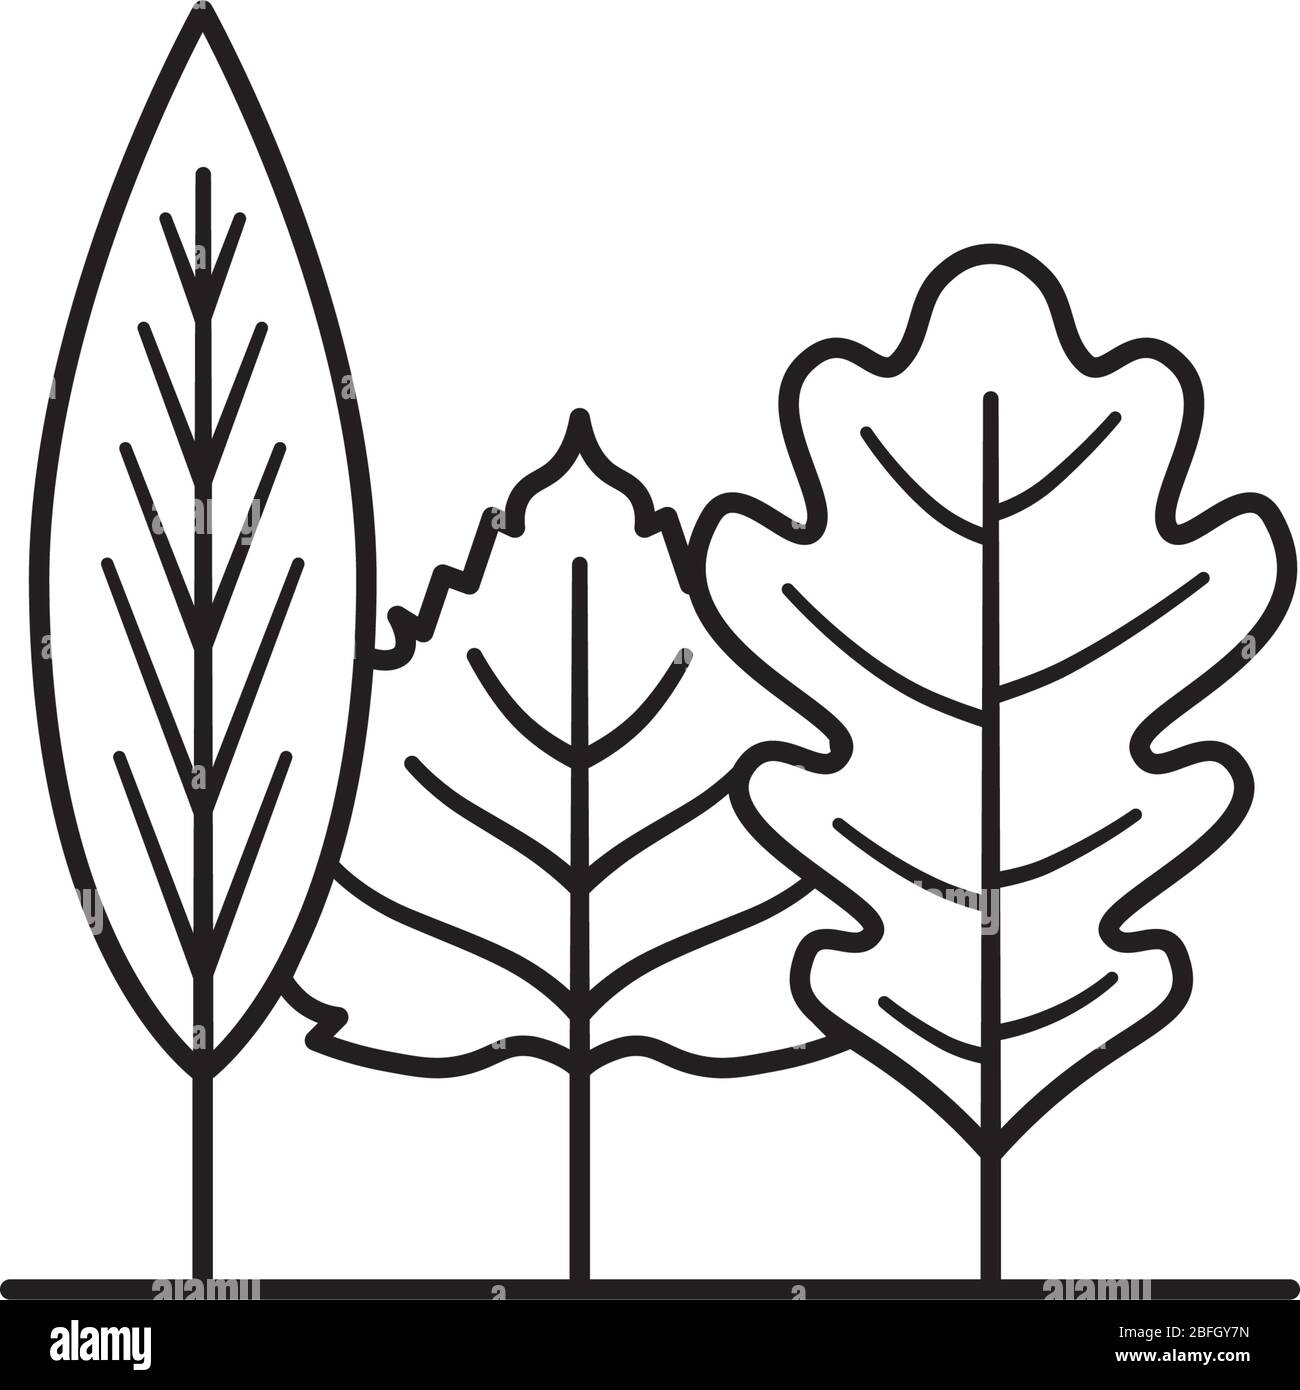 Verschiedene Blätter, die wie ein kleines Waldsymbol für isolierte Vektorlinien aussehen. Umwelt und Natur umreiß Symbol Stock Vektor